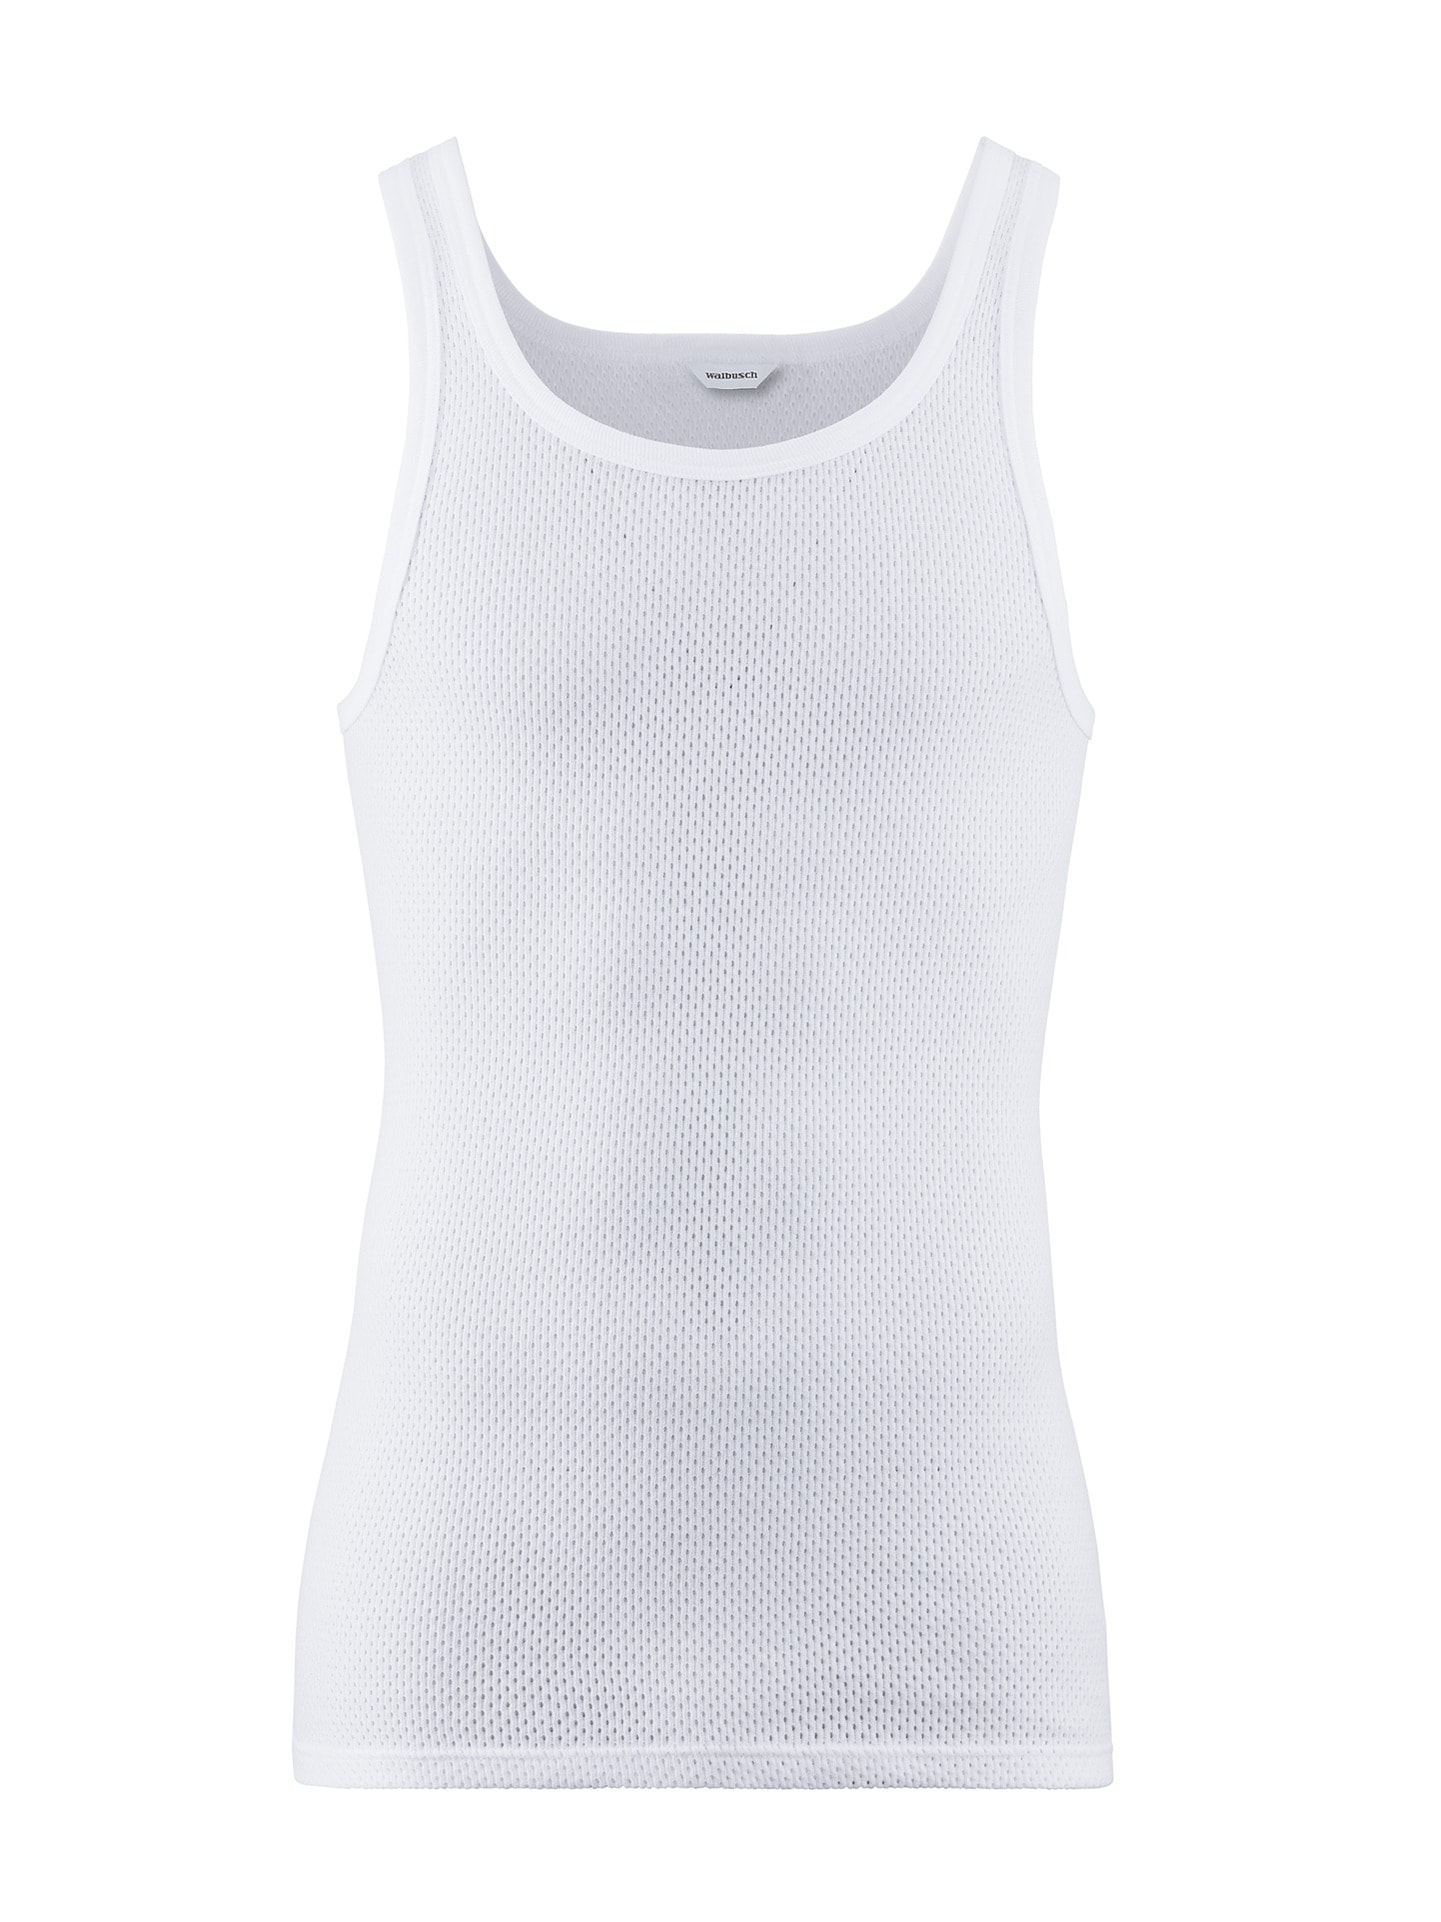 Klima-Komfort-Unterhemd 2er-Pack Weiß im Online-Shop bequem kaufen |  Walbusch